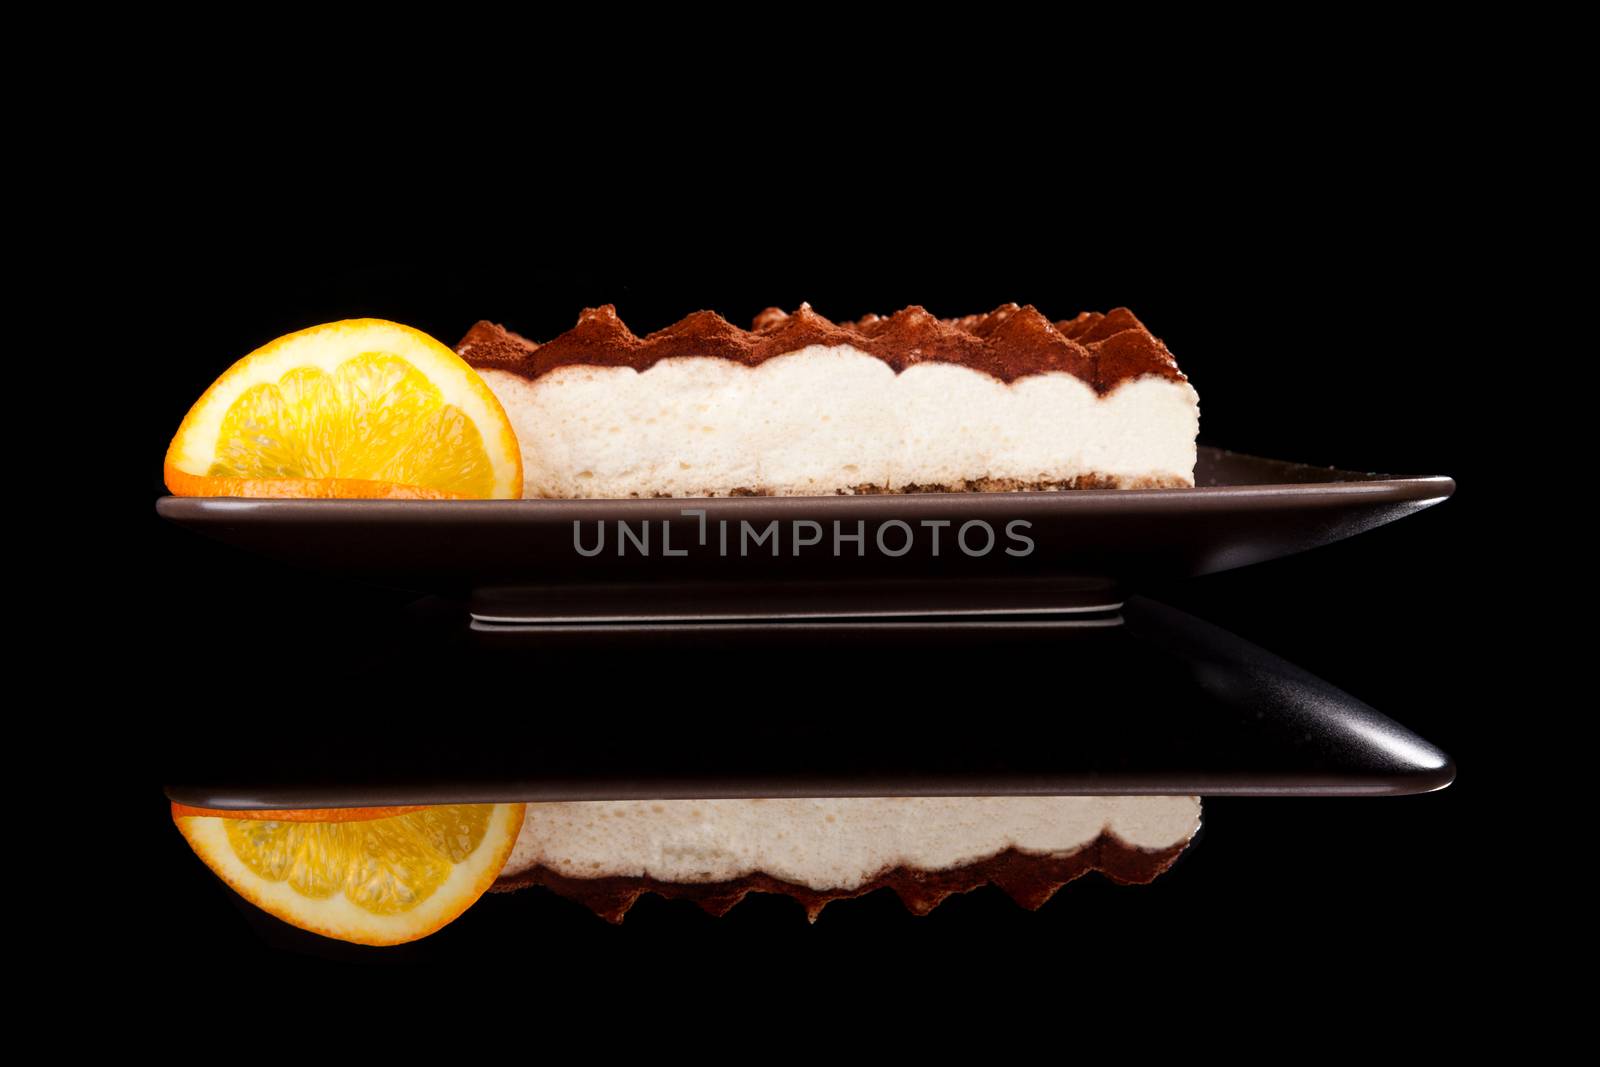 Luxurious tiramissu dessert. by eskymaks